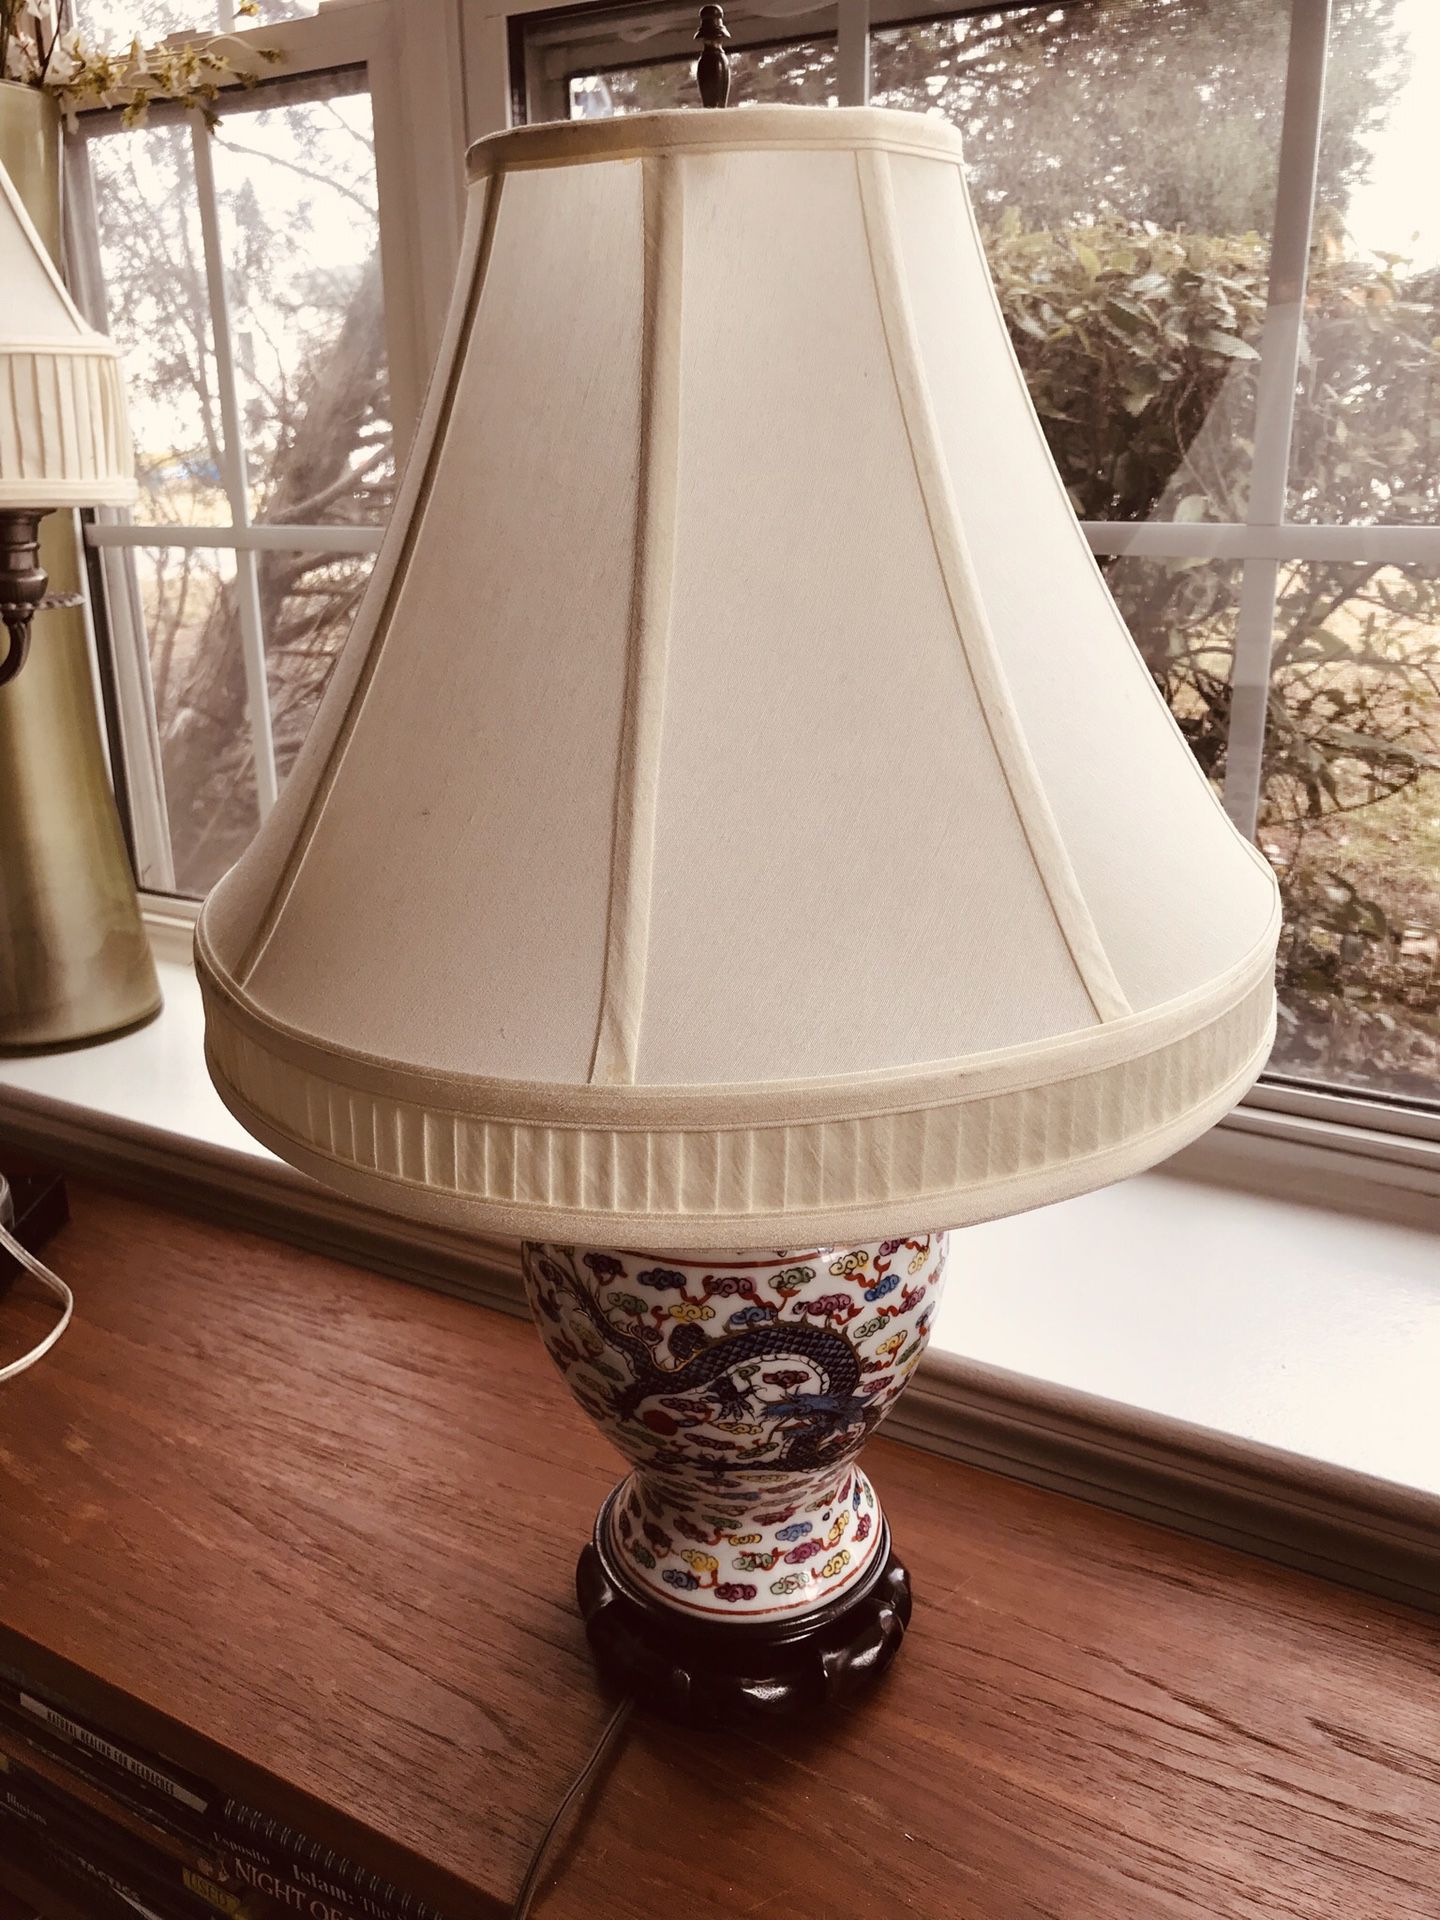 Beautiful lamp